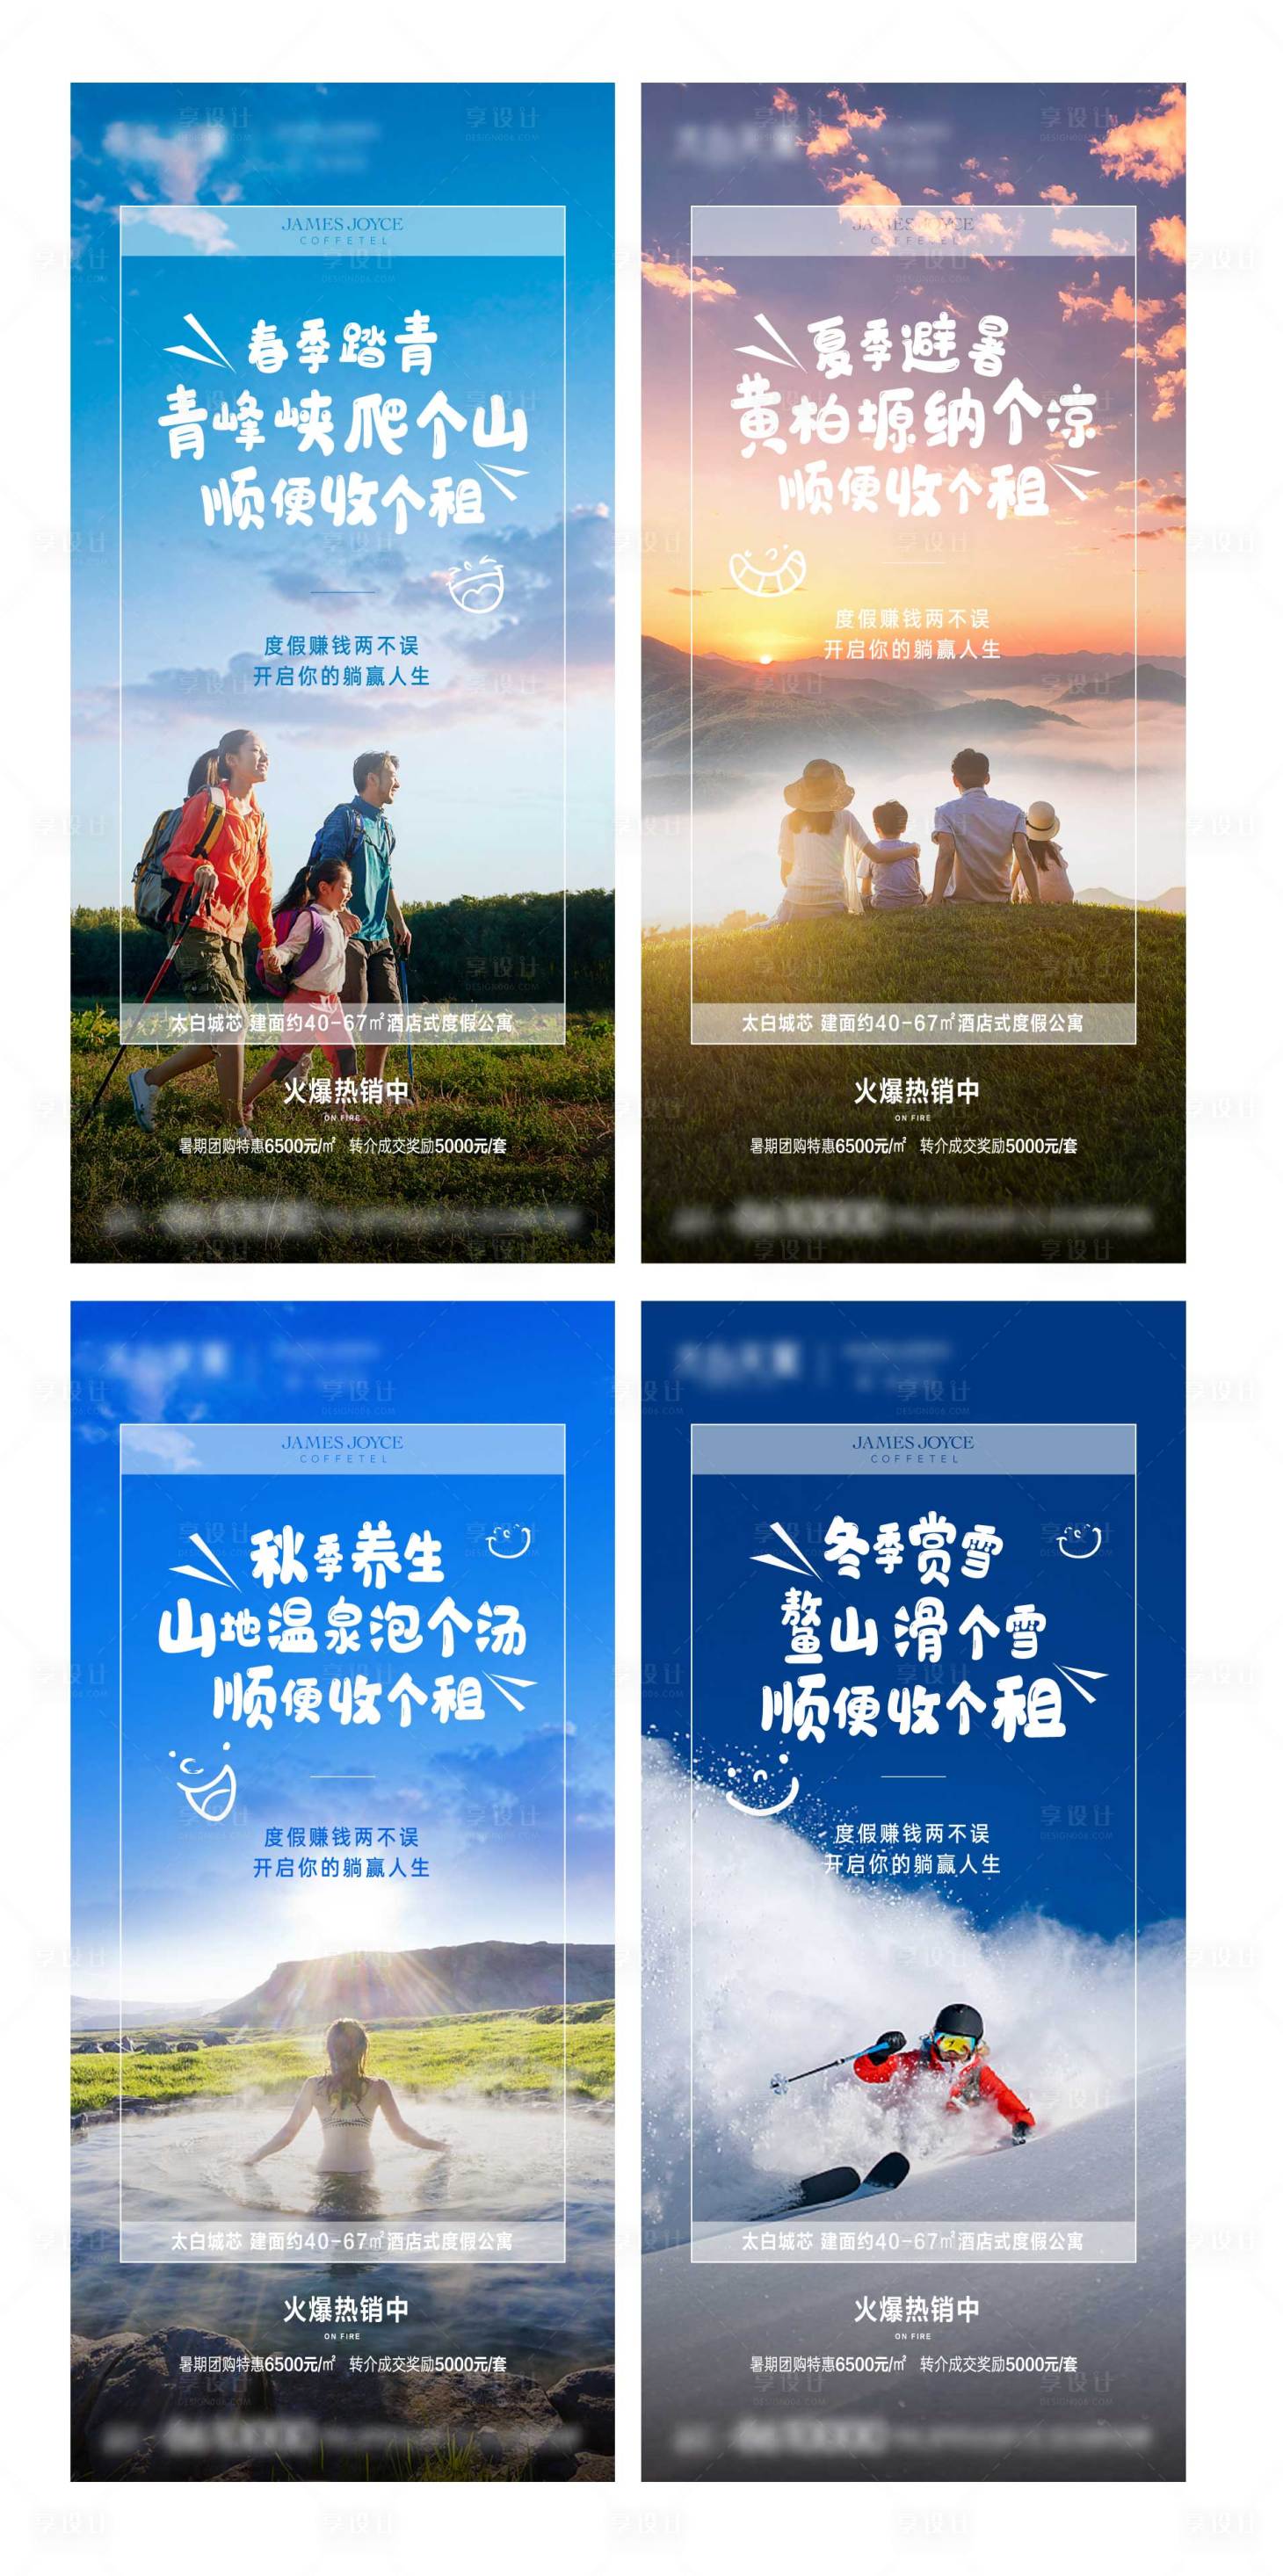 《广东文化旅游活动指南（夏季版）》开展直播印制宣传手册支持旅行社企业_质量提升_广东省文化和旅游厅